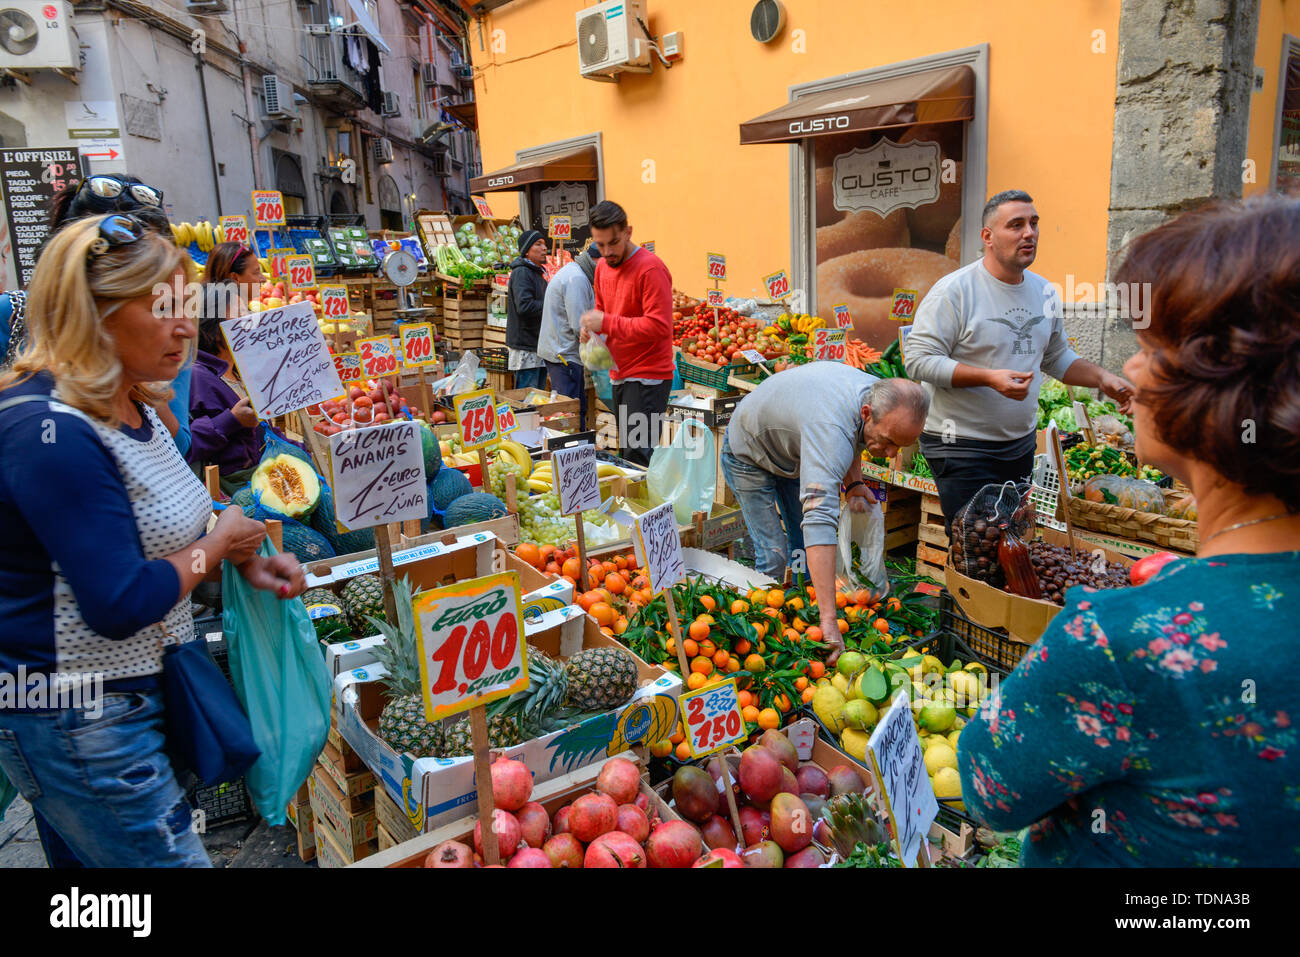 Obst und Gemuese, Wochenmarkt, La Pignasecca, Spanisches Viertel, Neapel, Italien Foto Stock